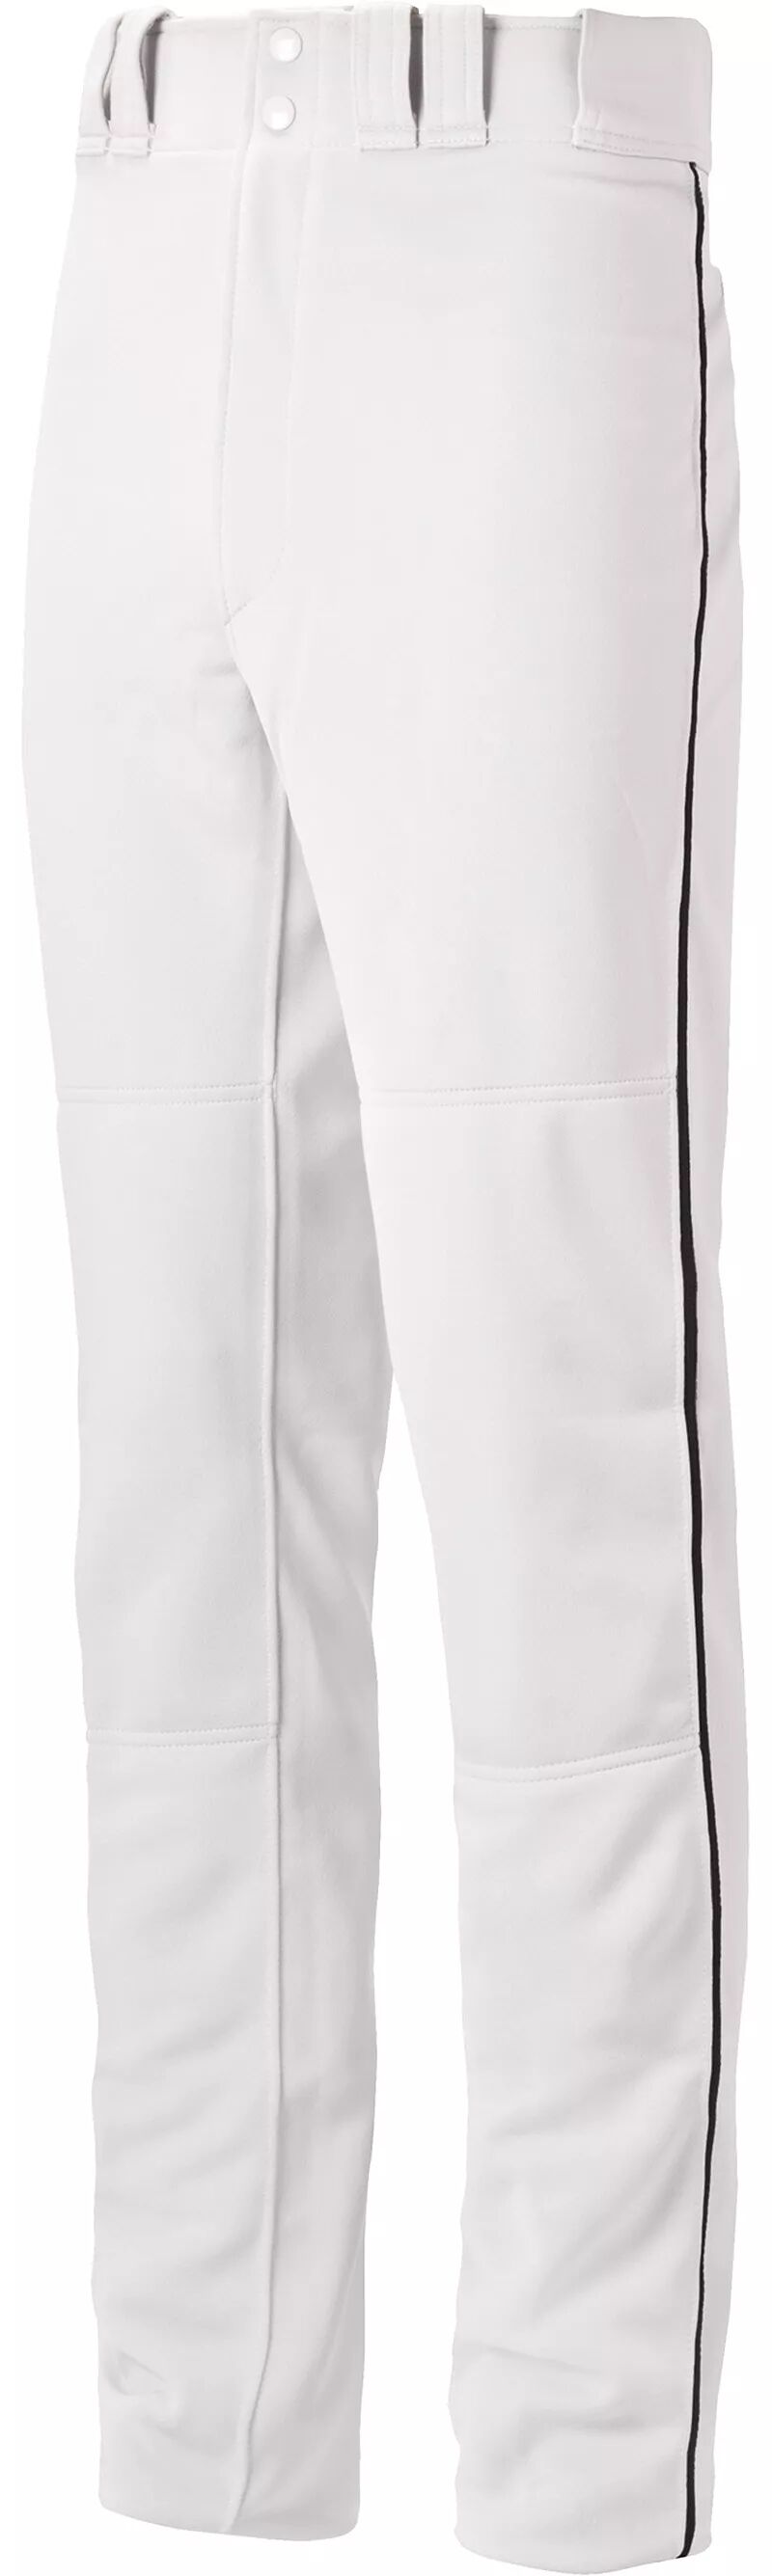 Бейсбольные брюки Mizuno Select Pro для мальчиков с окантовкой бейсбольные брюки 22